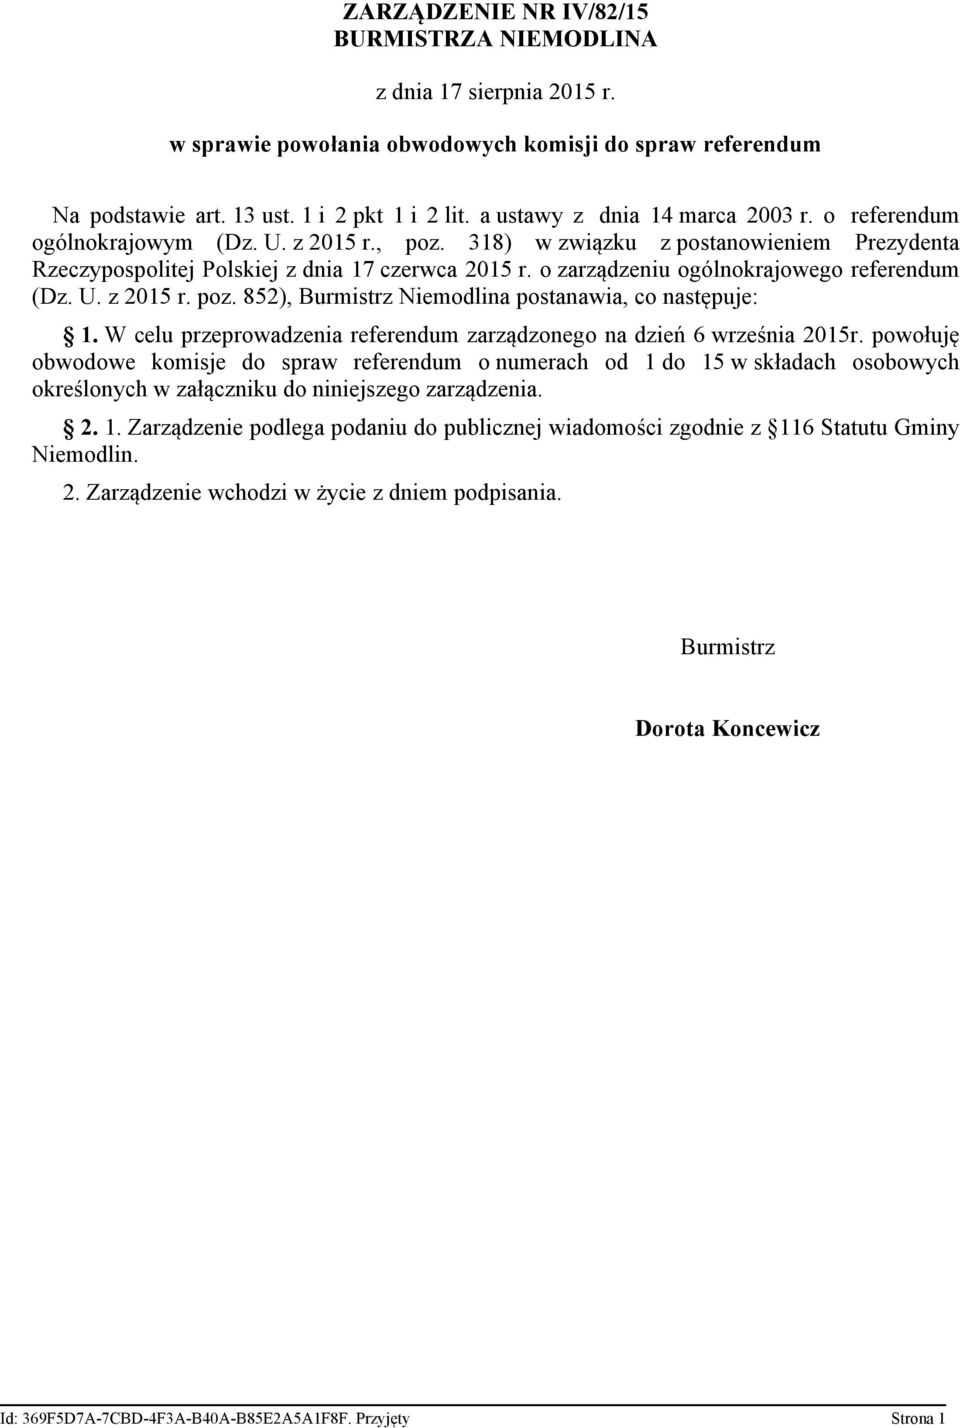 o zarządzeniu ogólnokrajowego referendum (Dz. U. z 2015 r. poz. 852), Burmistrz Niemodlina postanawia, co następuje: 1. W celu przeprowadzenia referendum zarządzonego na dzień 6 września 2015r.